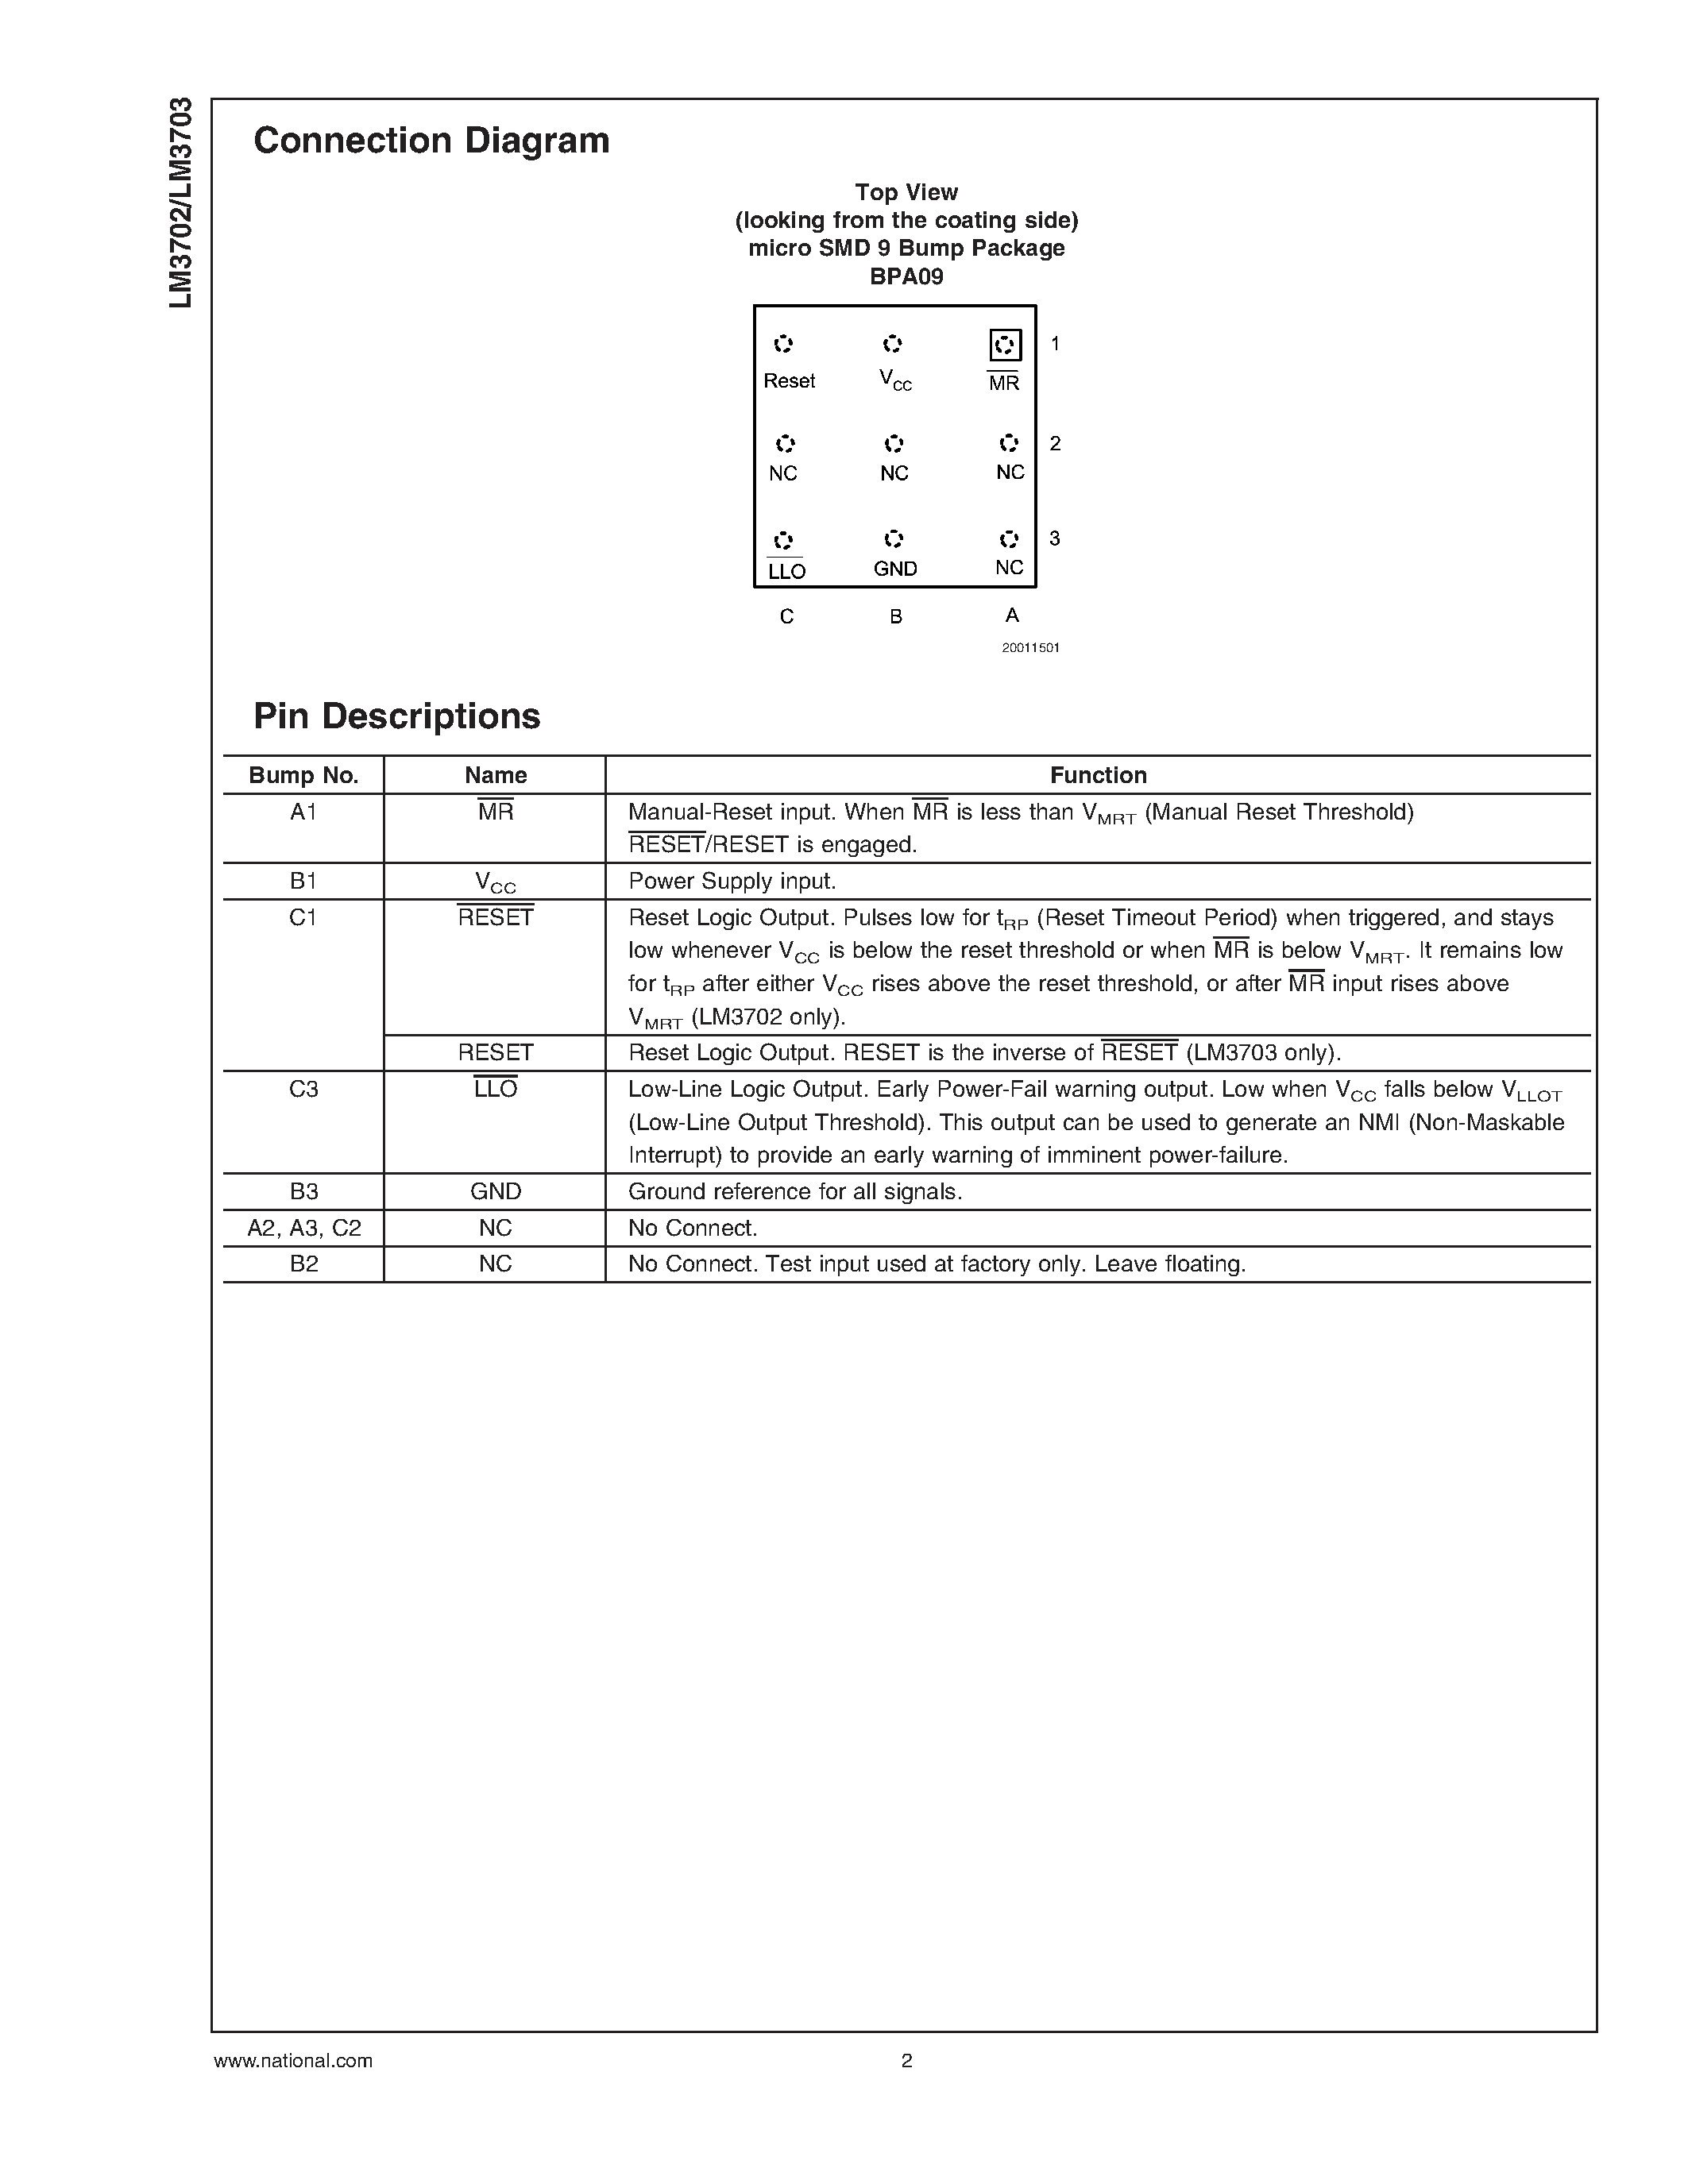 Даташит LM3702 - (LM3702 / LM3703) Microprocessor Supervisory Circuits страница 2